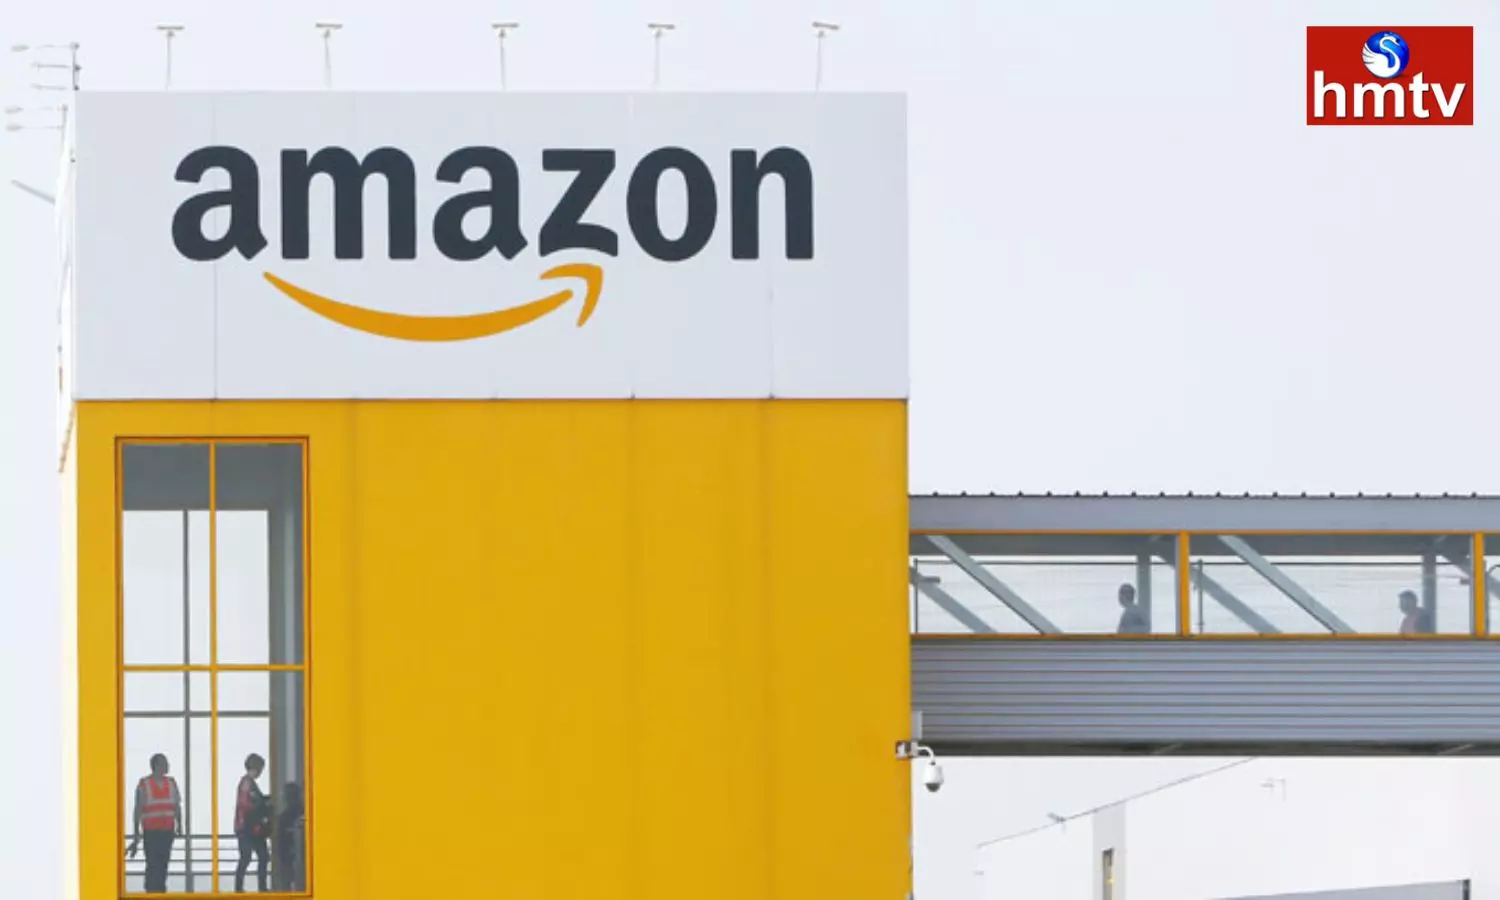 Layoffs Have Begun at Amazon